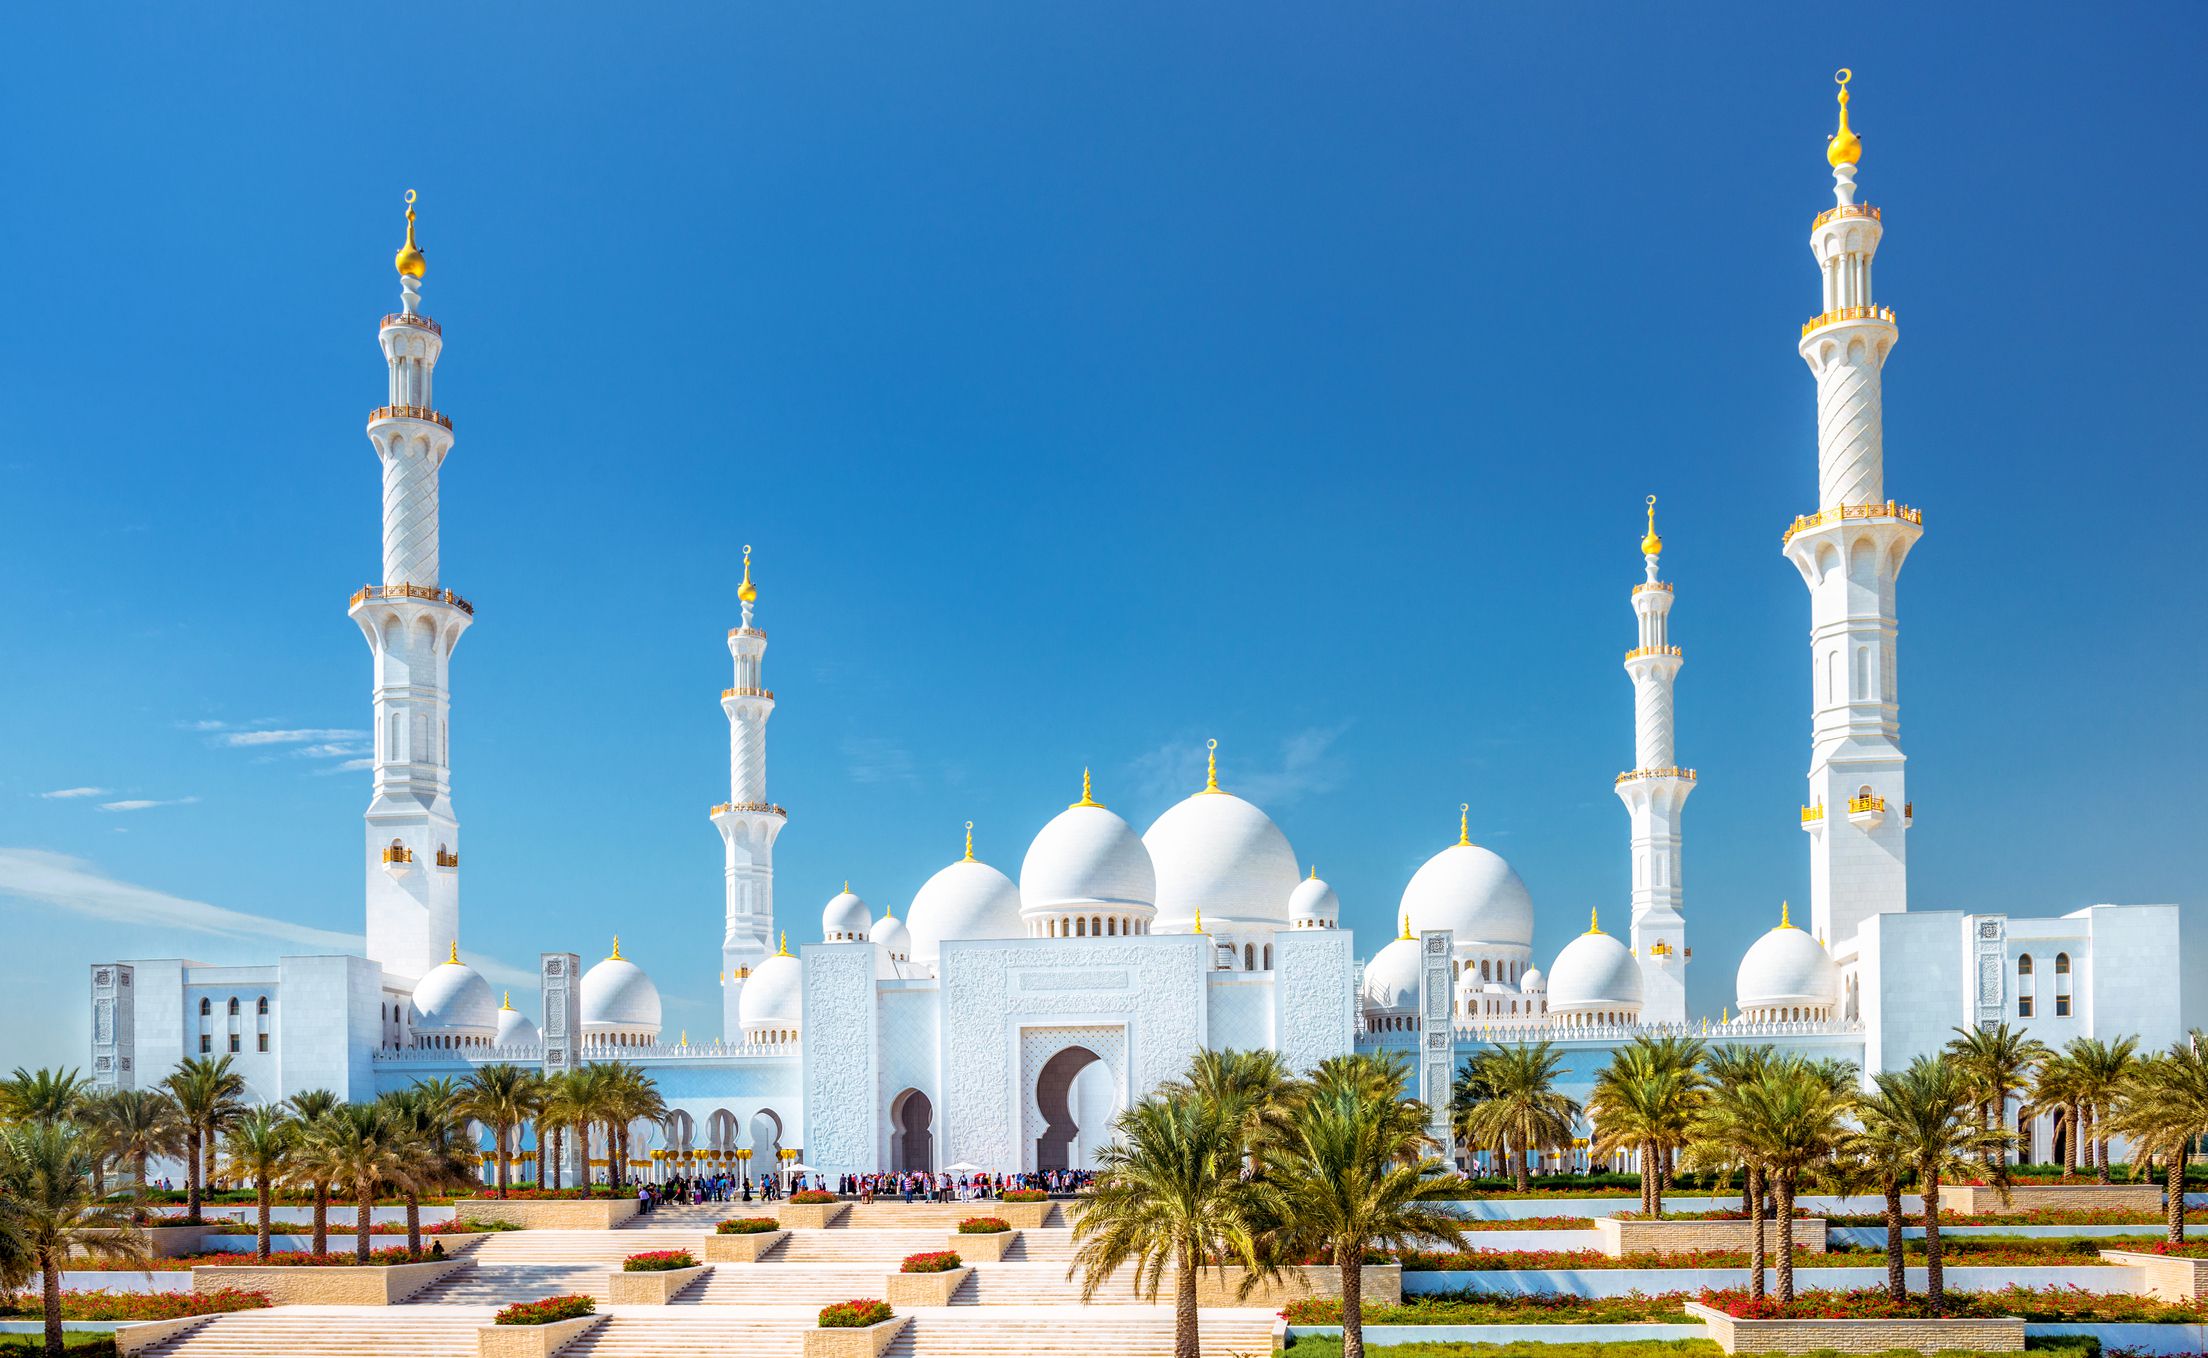 Tham quan Sheikh Zayed Grand Mosque - Nhà thờ trắng hồi giáo 4